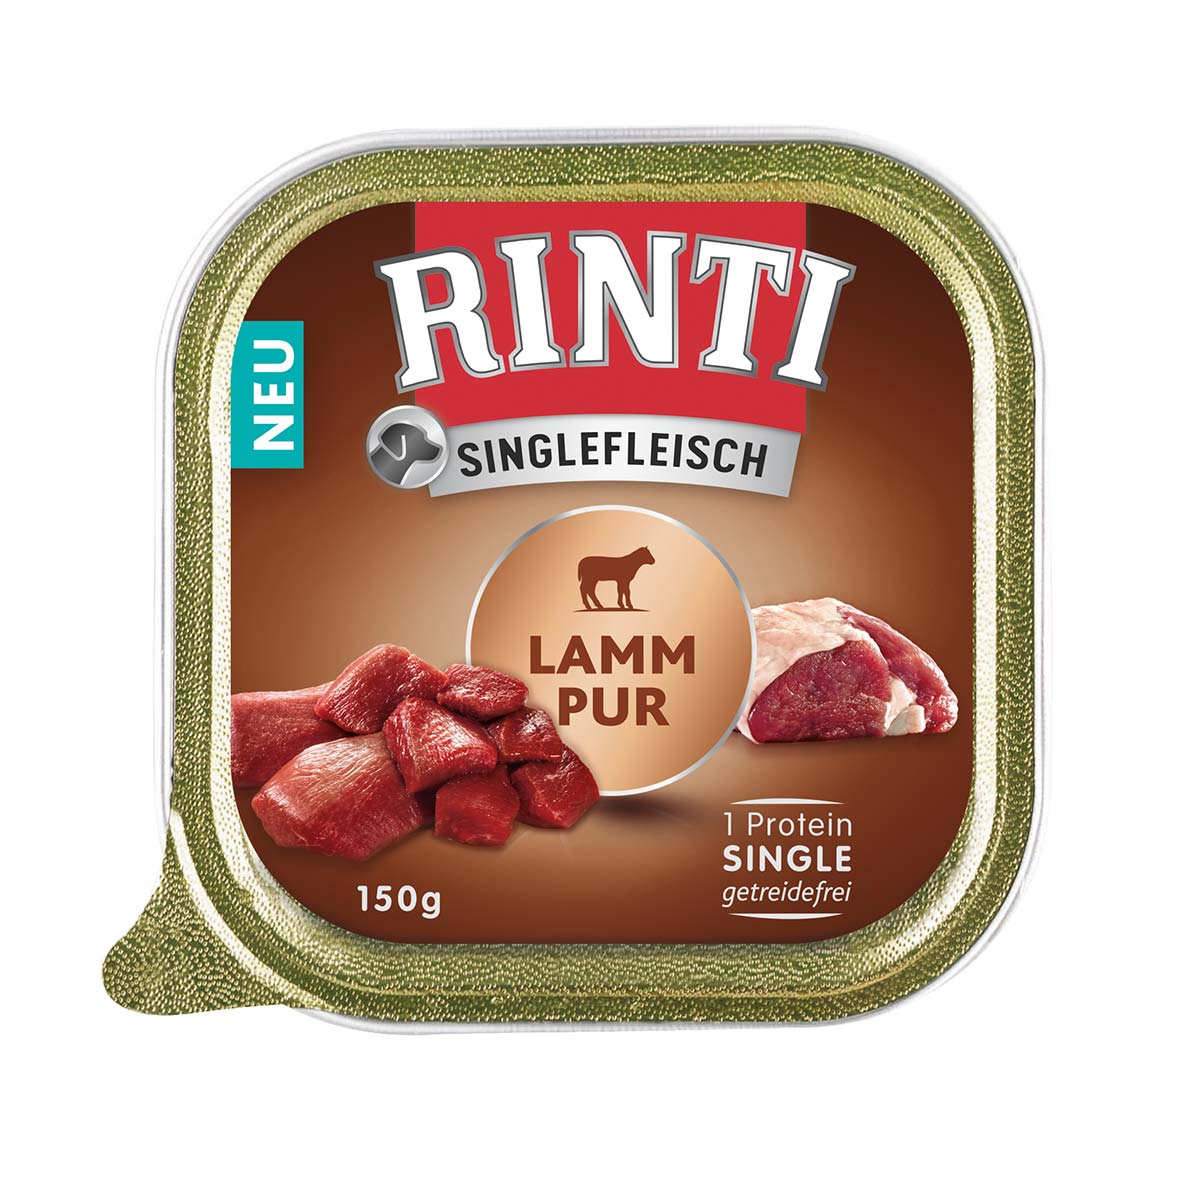 RINTI Singlefleisch Lamm Pur 10x150g